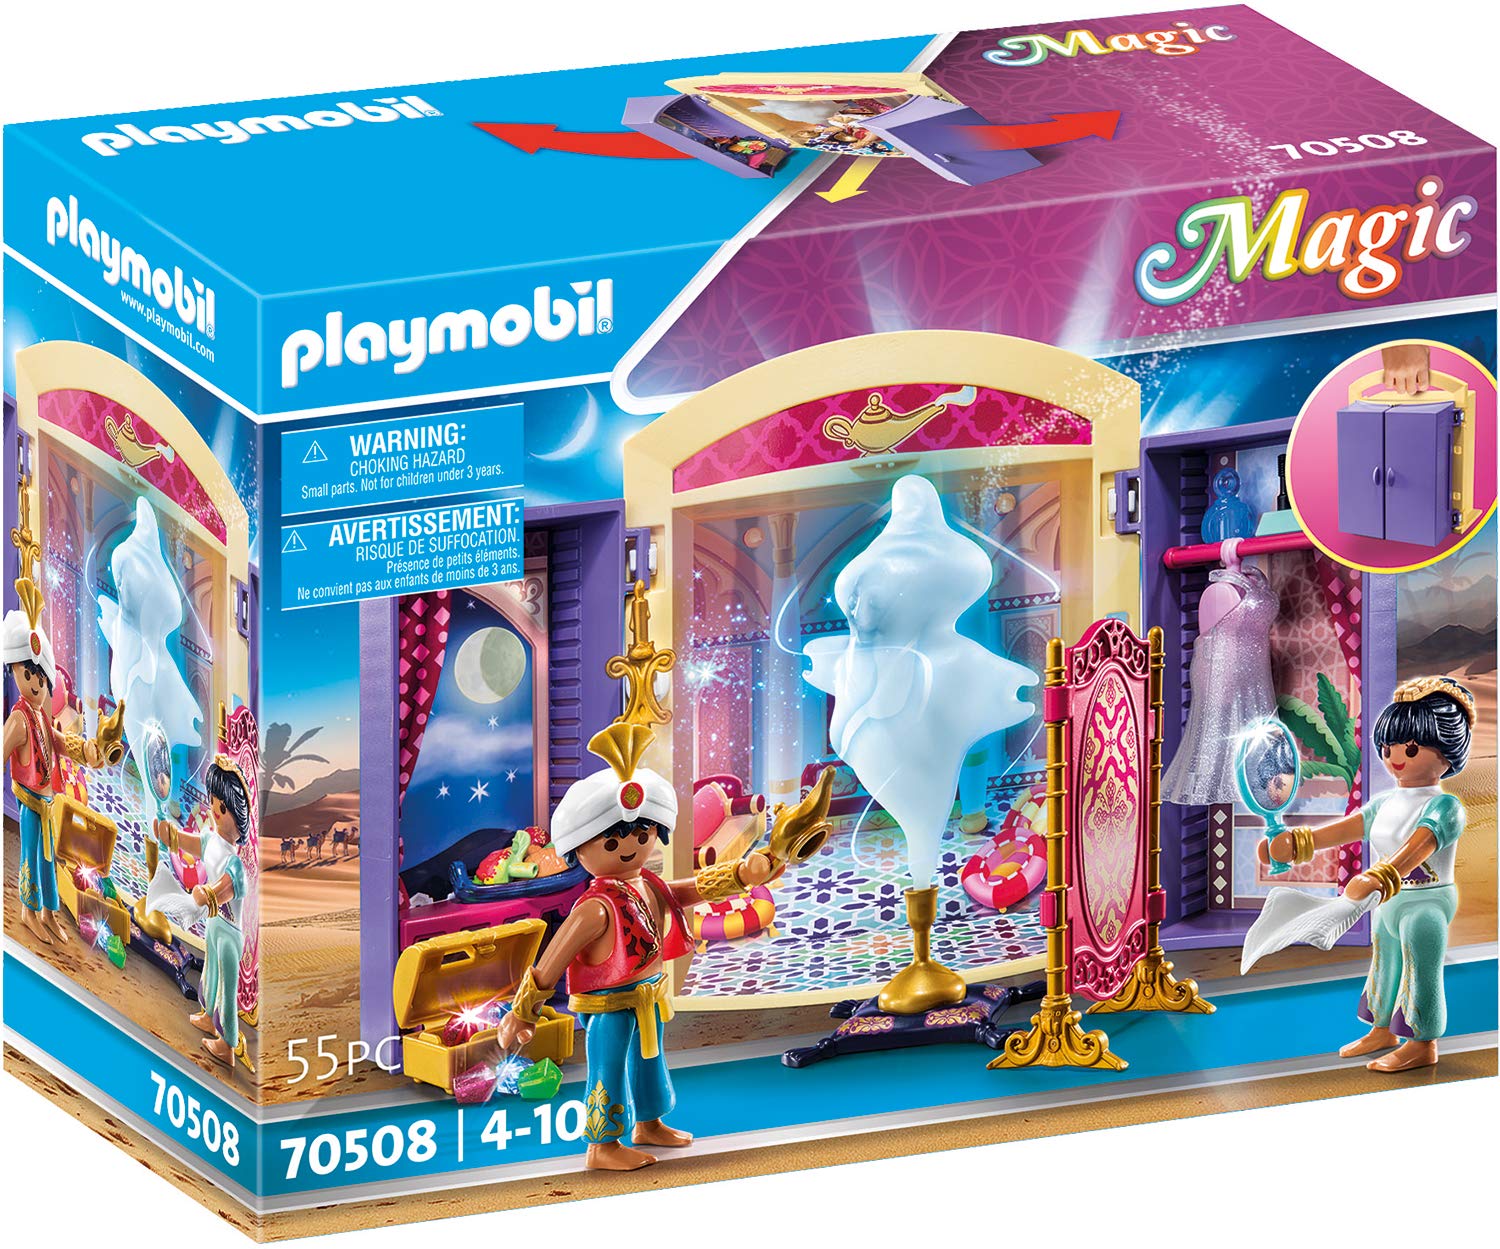 PLAYMOBIL Magic 70508 Spielbox Orientprinzessin, Ab 4 Jahren